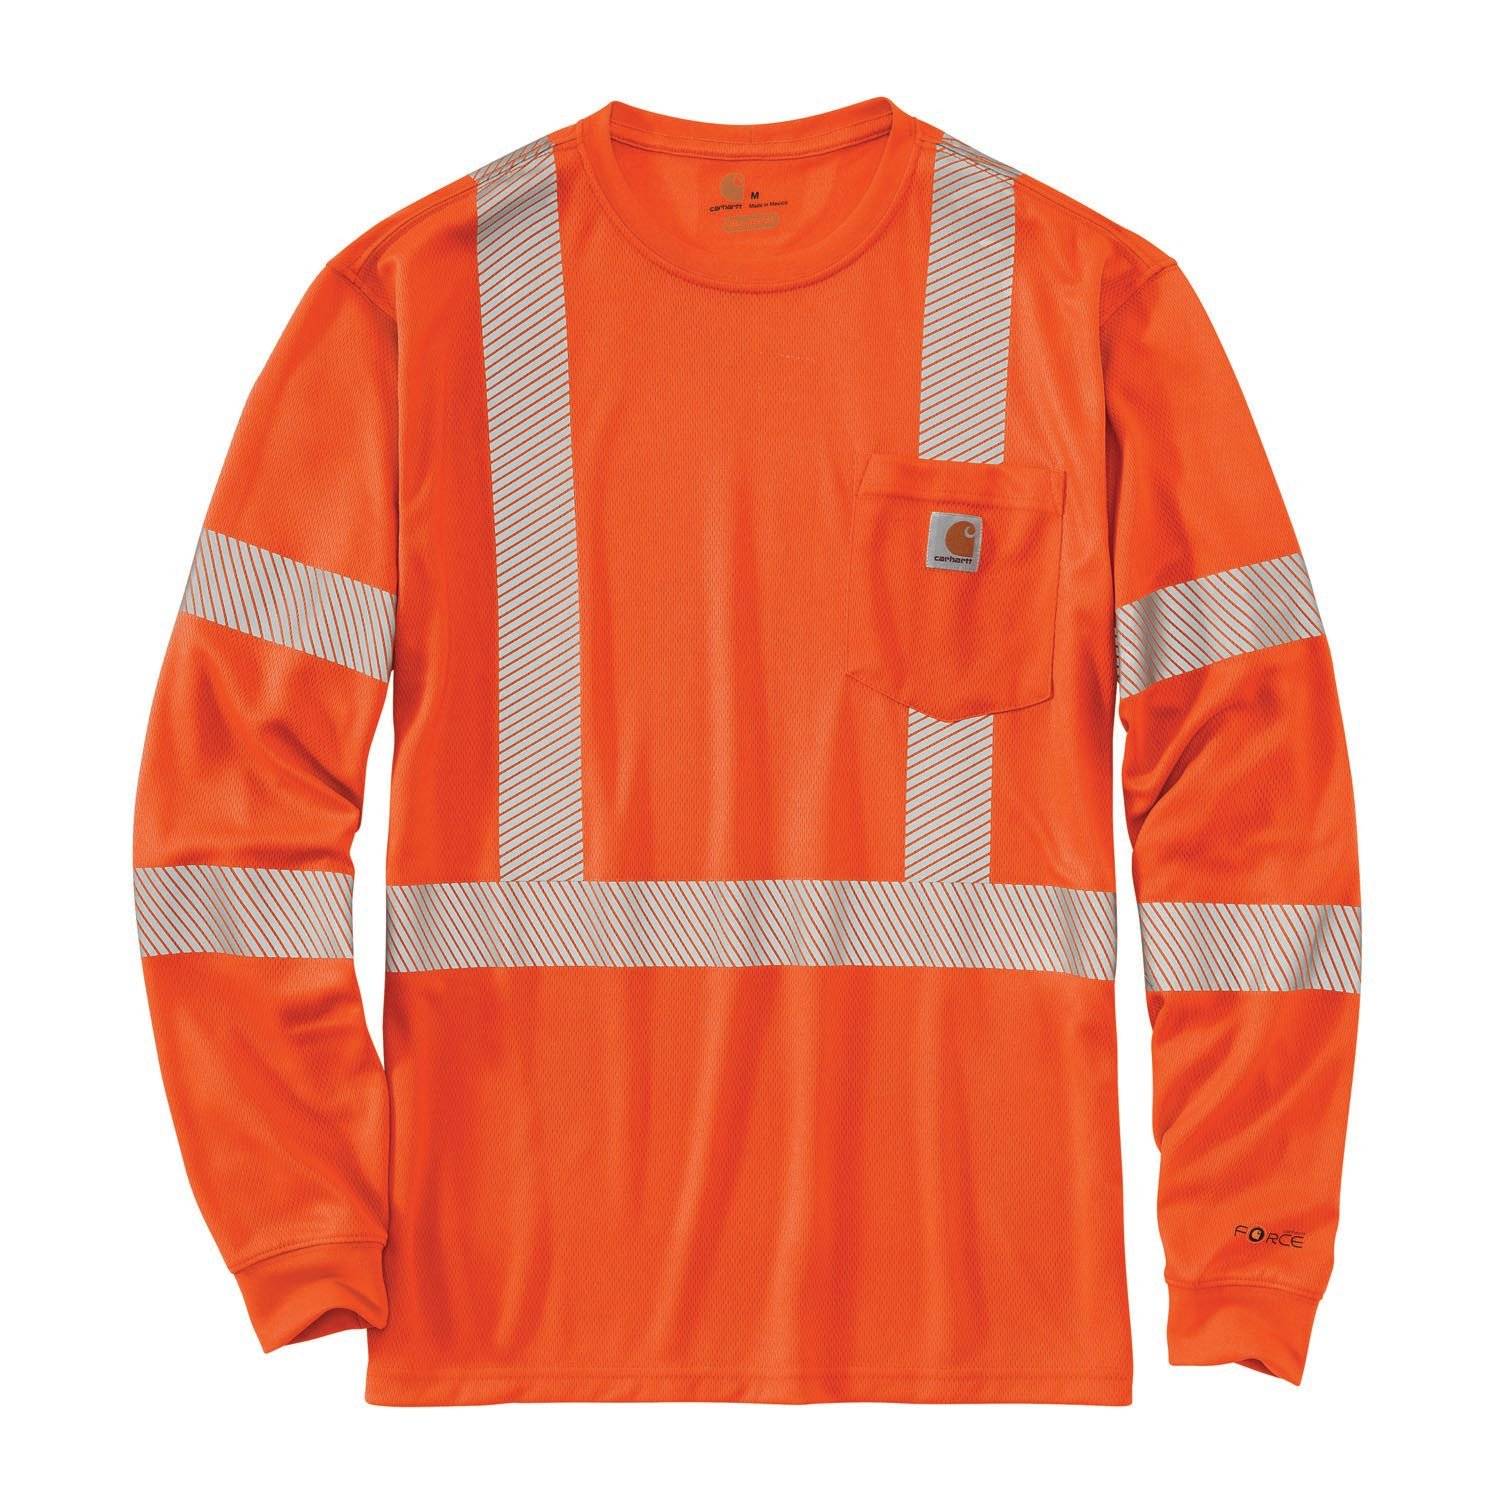 Carhartt Force High-Visibility Long Sleeve Class 3 T-Shirt